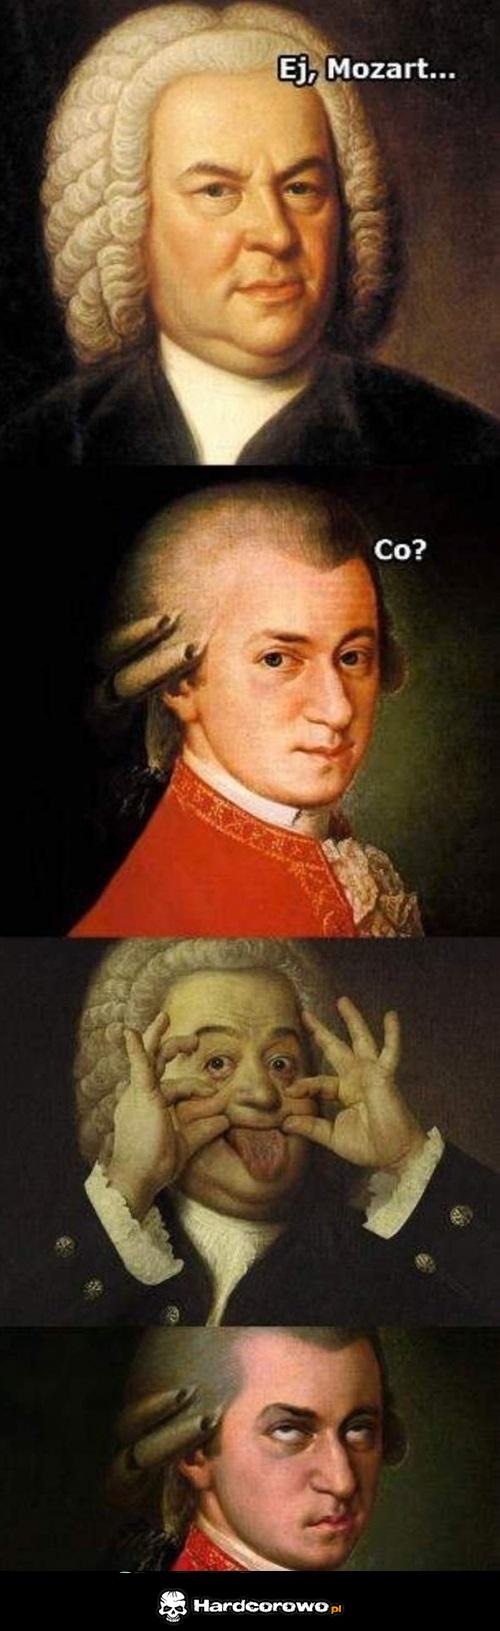 Ej Mozart! - 1